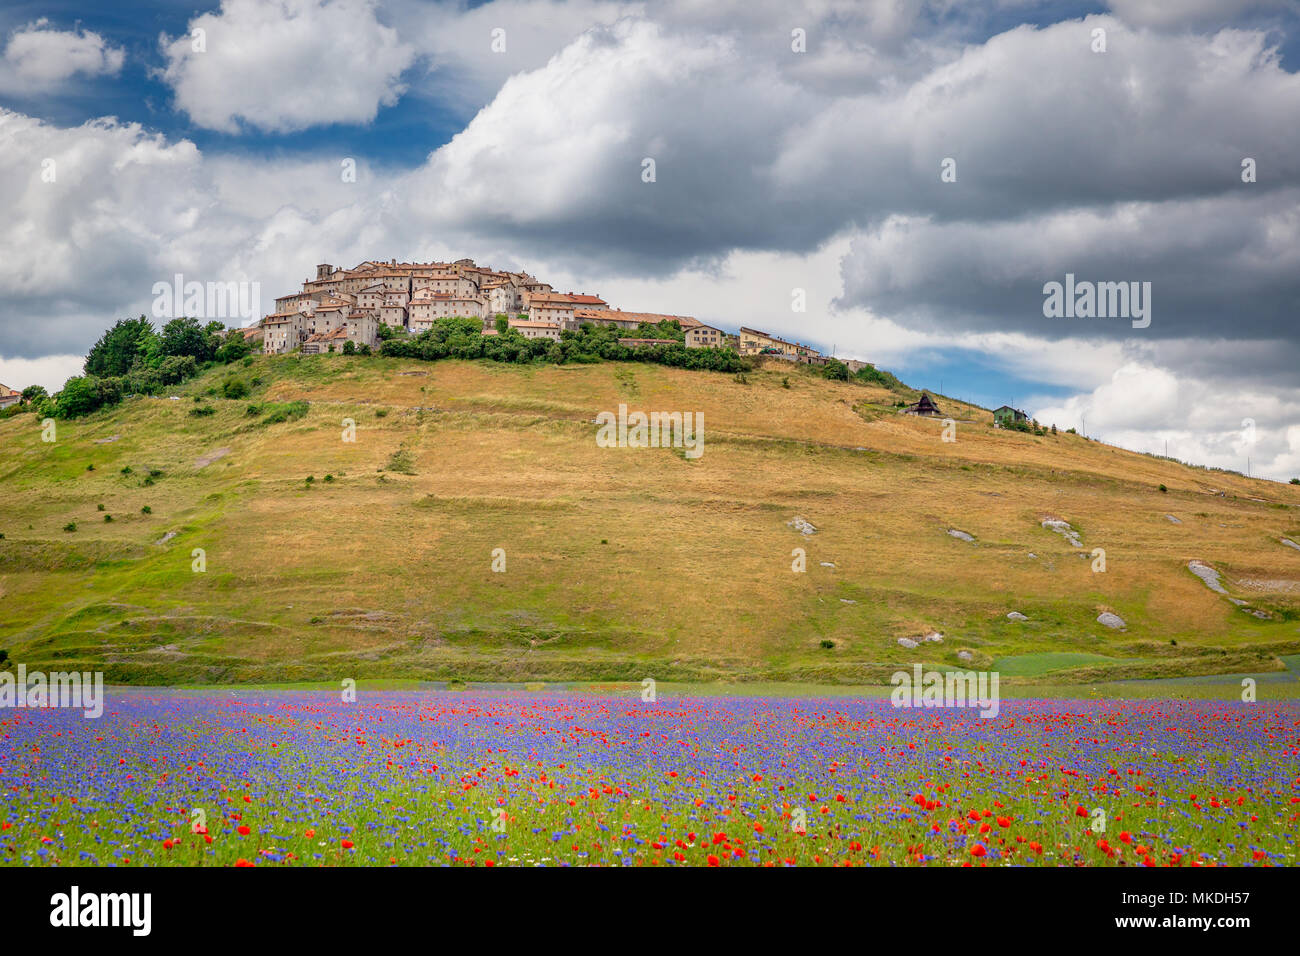 Field of wildflowers, Castelluccio di Norcia, Piano Grande, Monti Sibillini National Park, Umbria, Italy Stock Photo